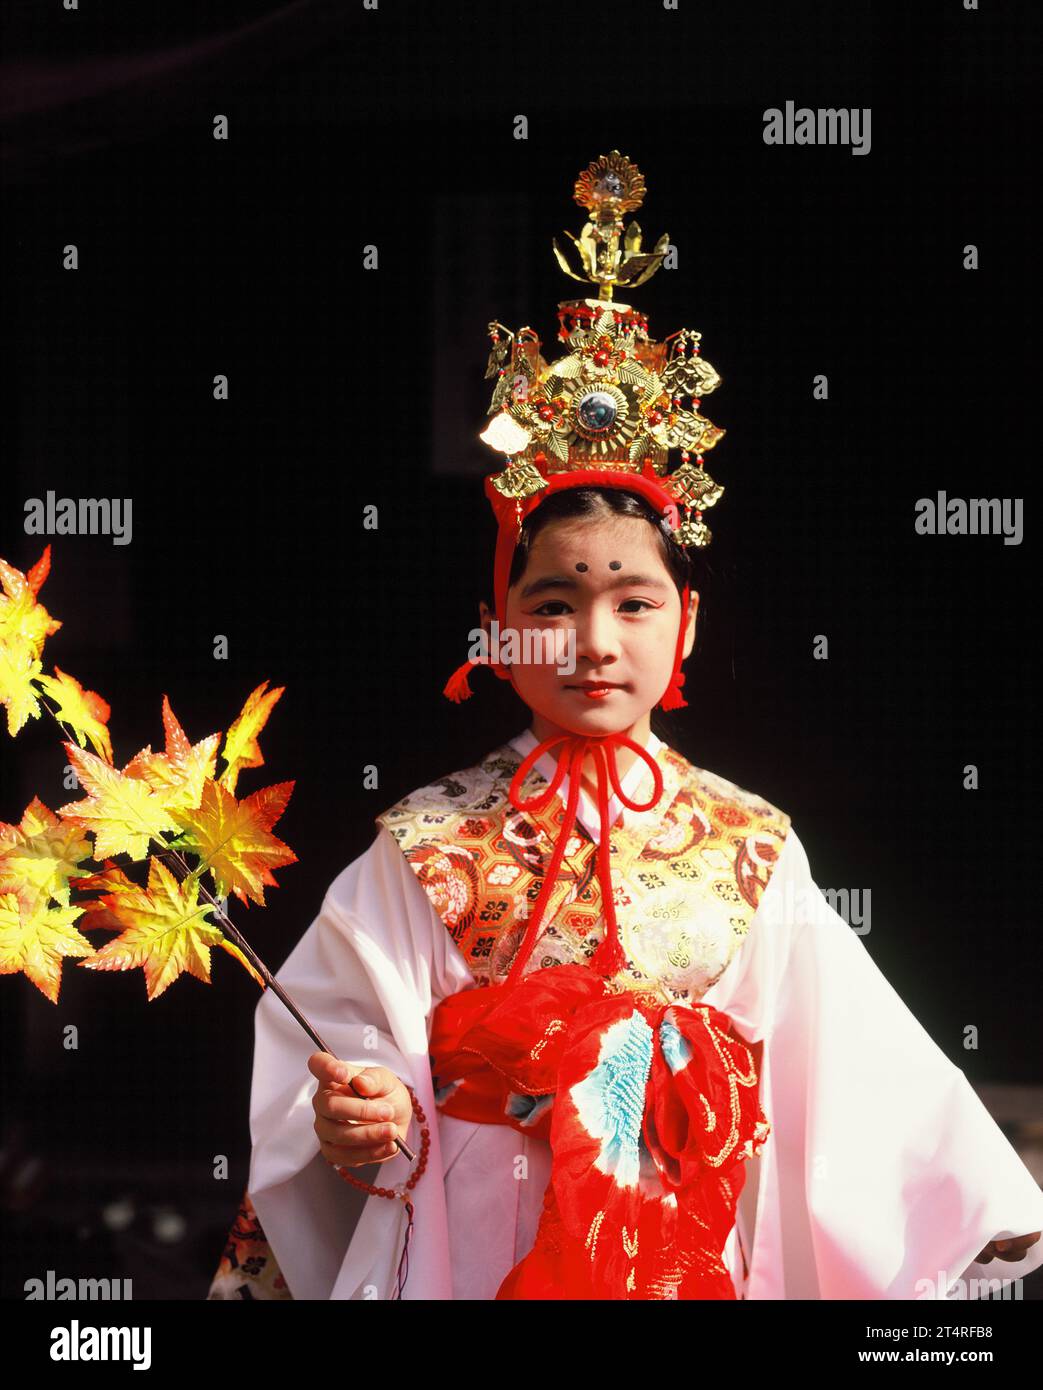 Japan. Tokio. Herbstfest. Einheimisches Mädchen in traditioneller Kleidung, das Ahornzweig hält. Stockfoto